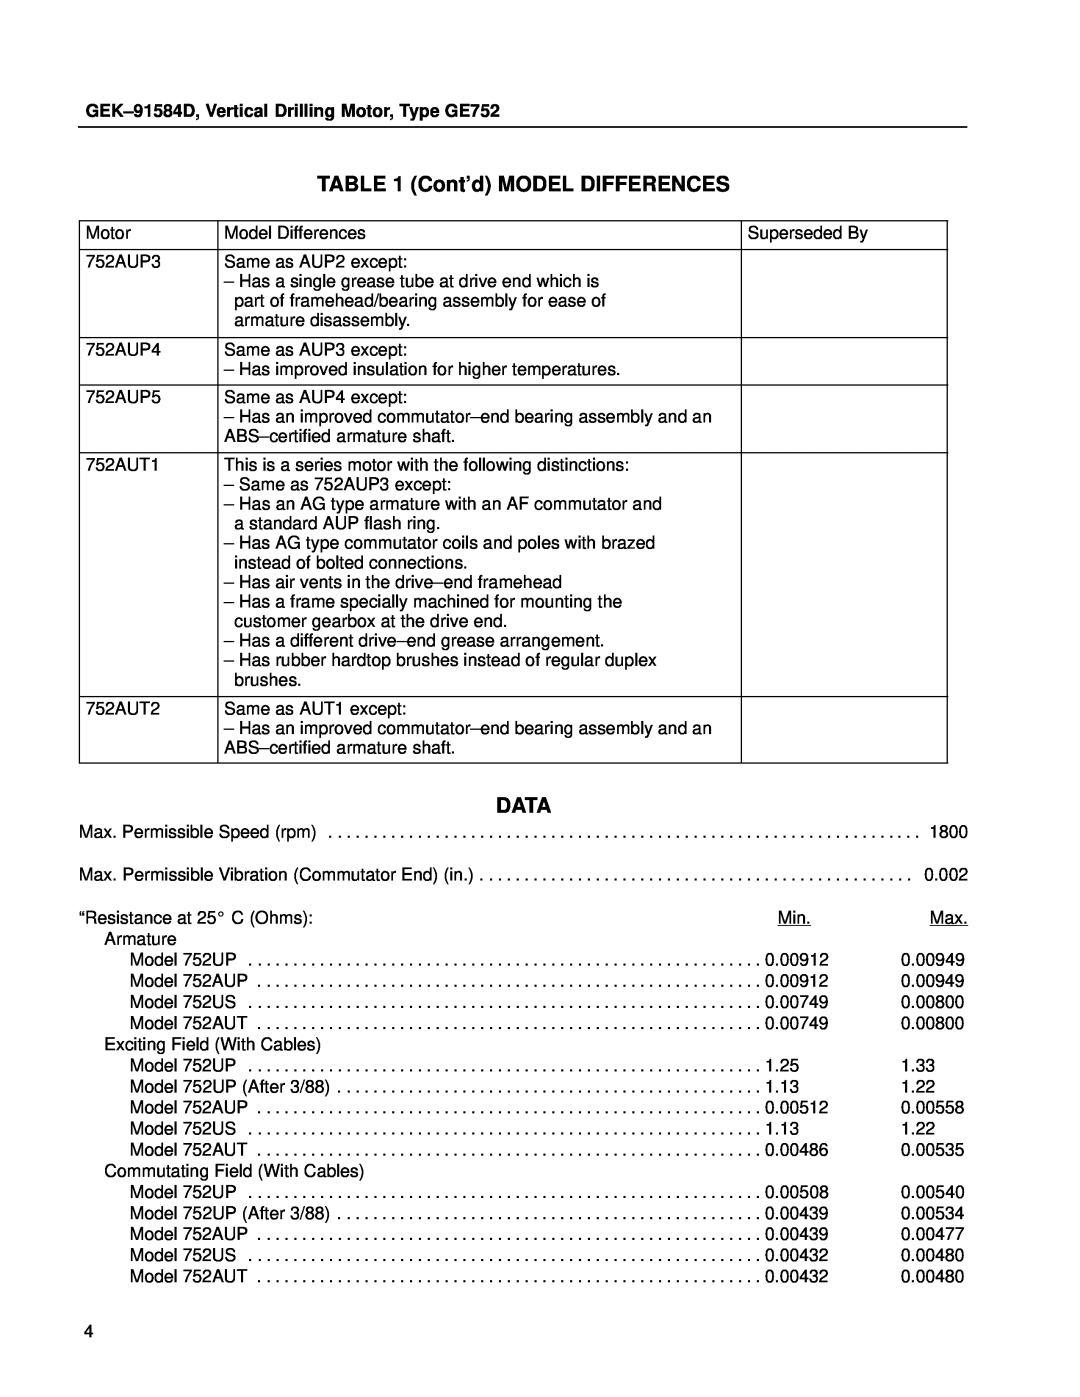 GE manual Contd MODEL DIFFERENCES, Data, GEK±91584D, Vertical Drilling Motor, Type GE752 